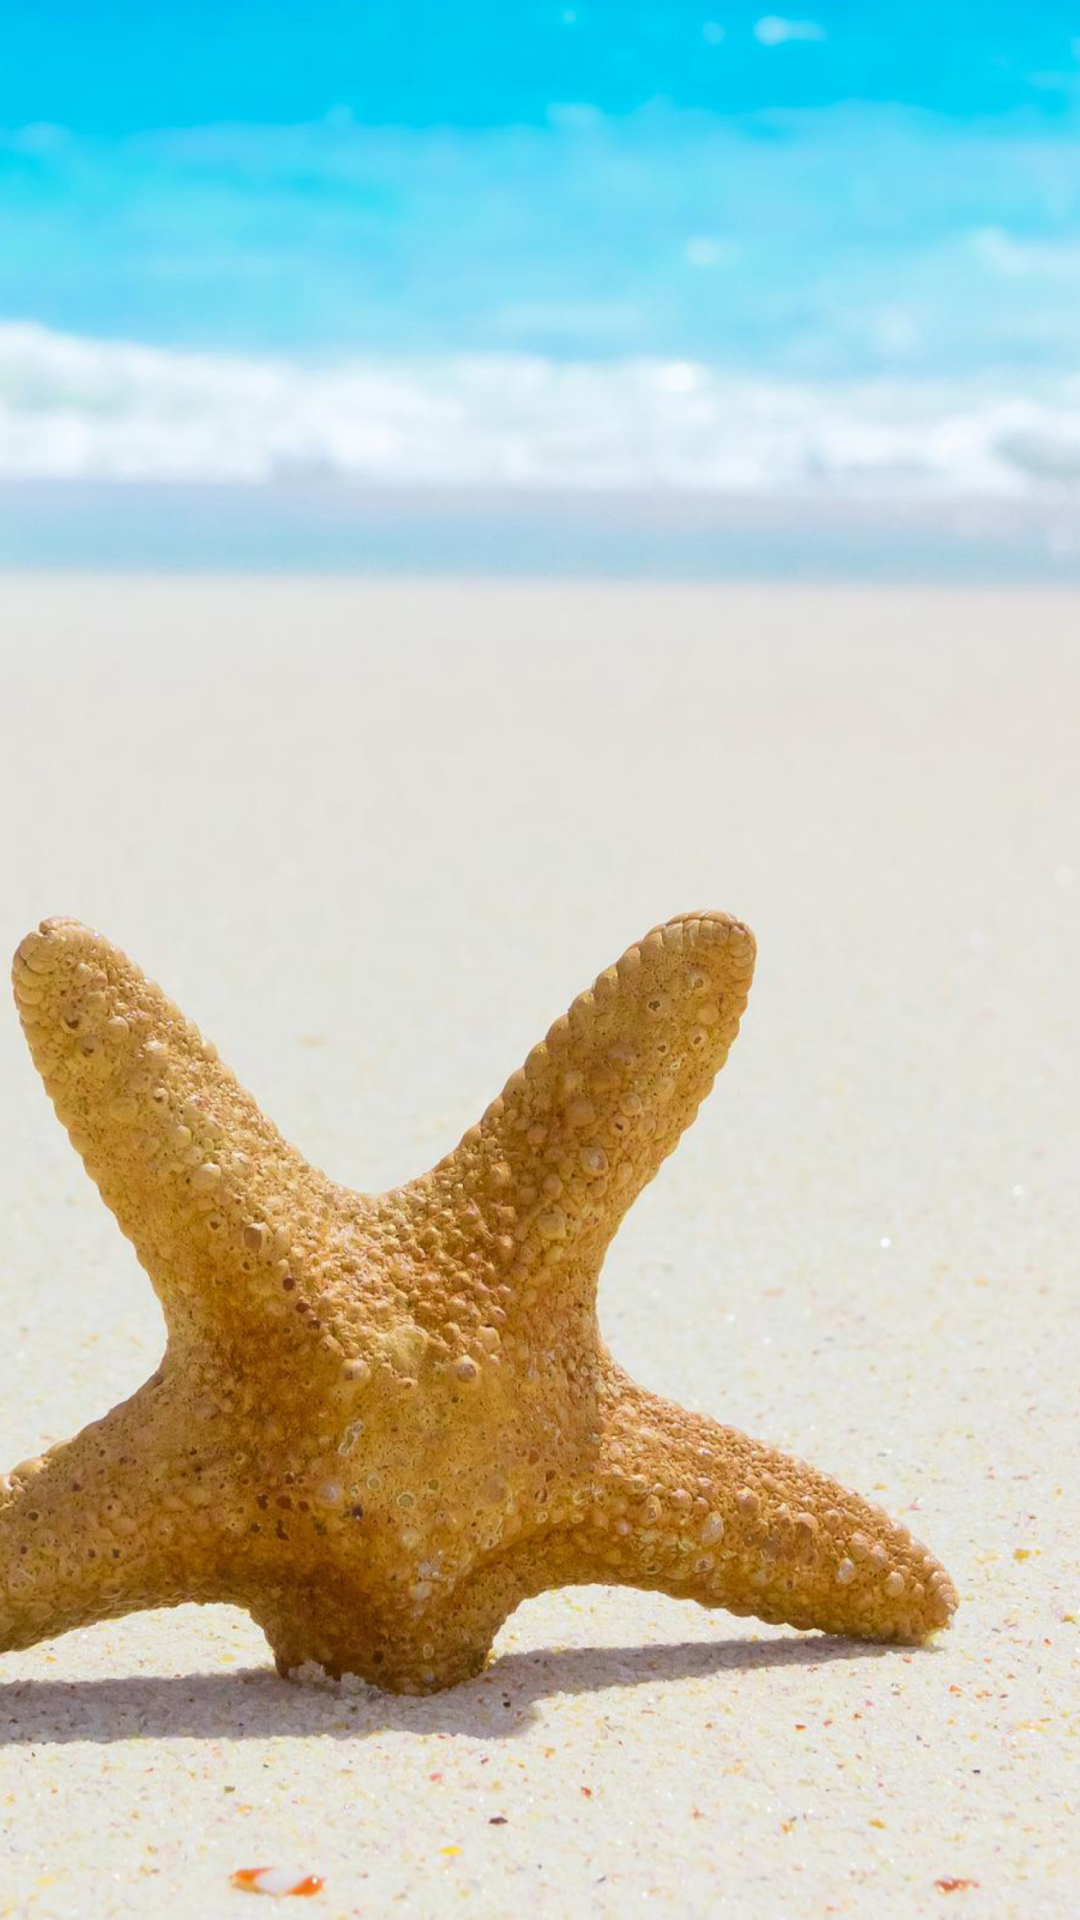 Обои Starfish On Beach 1080x1920